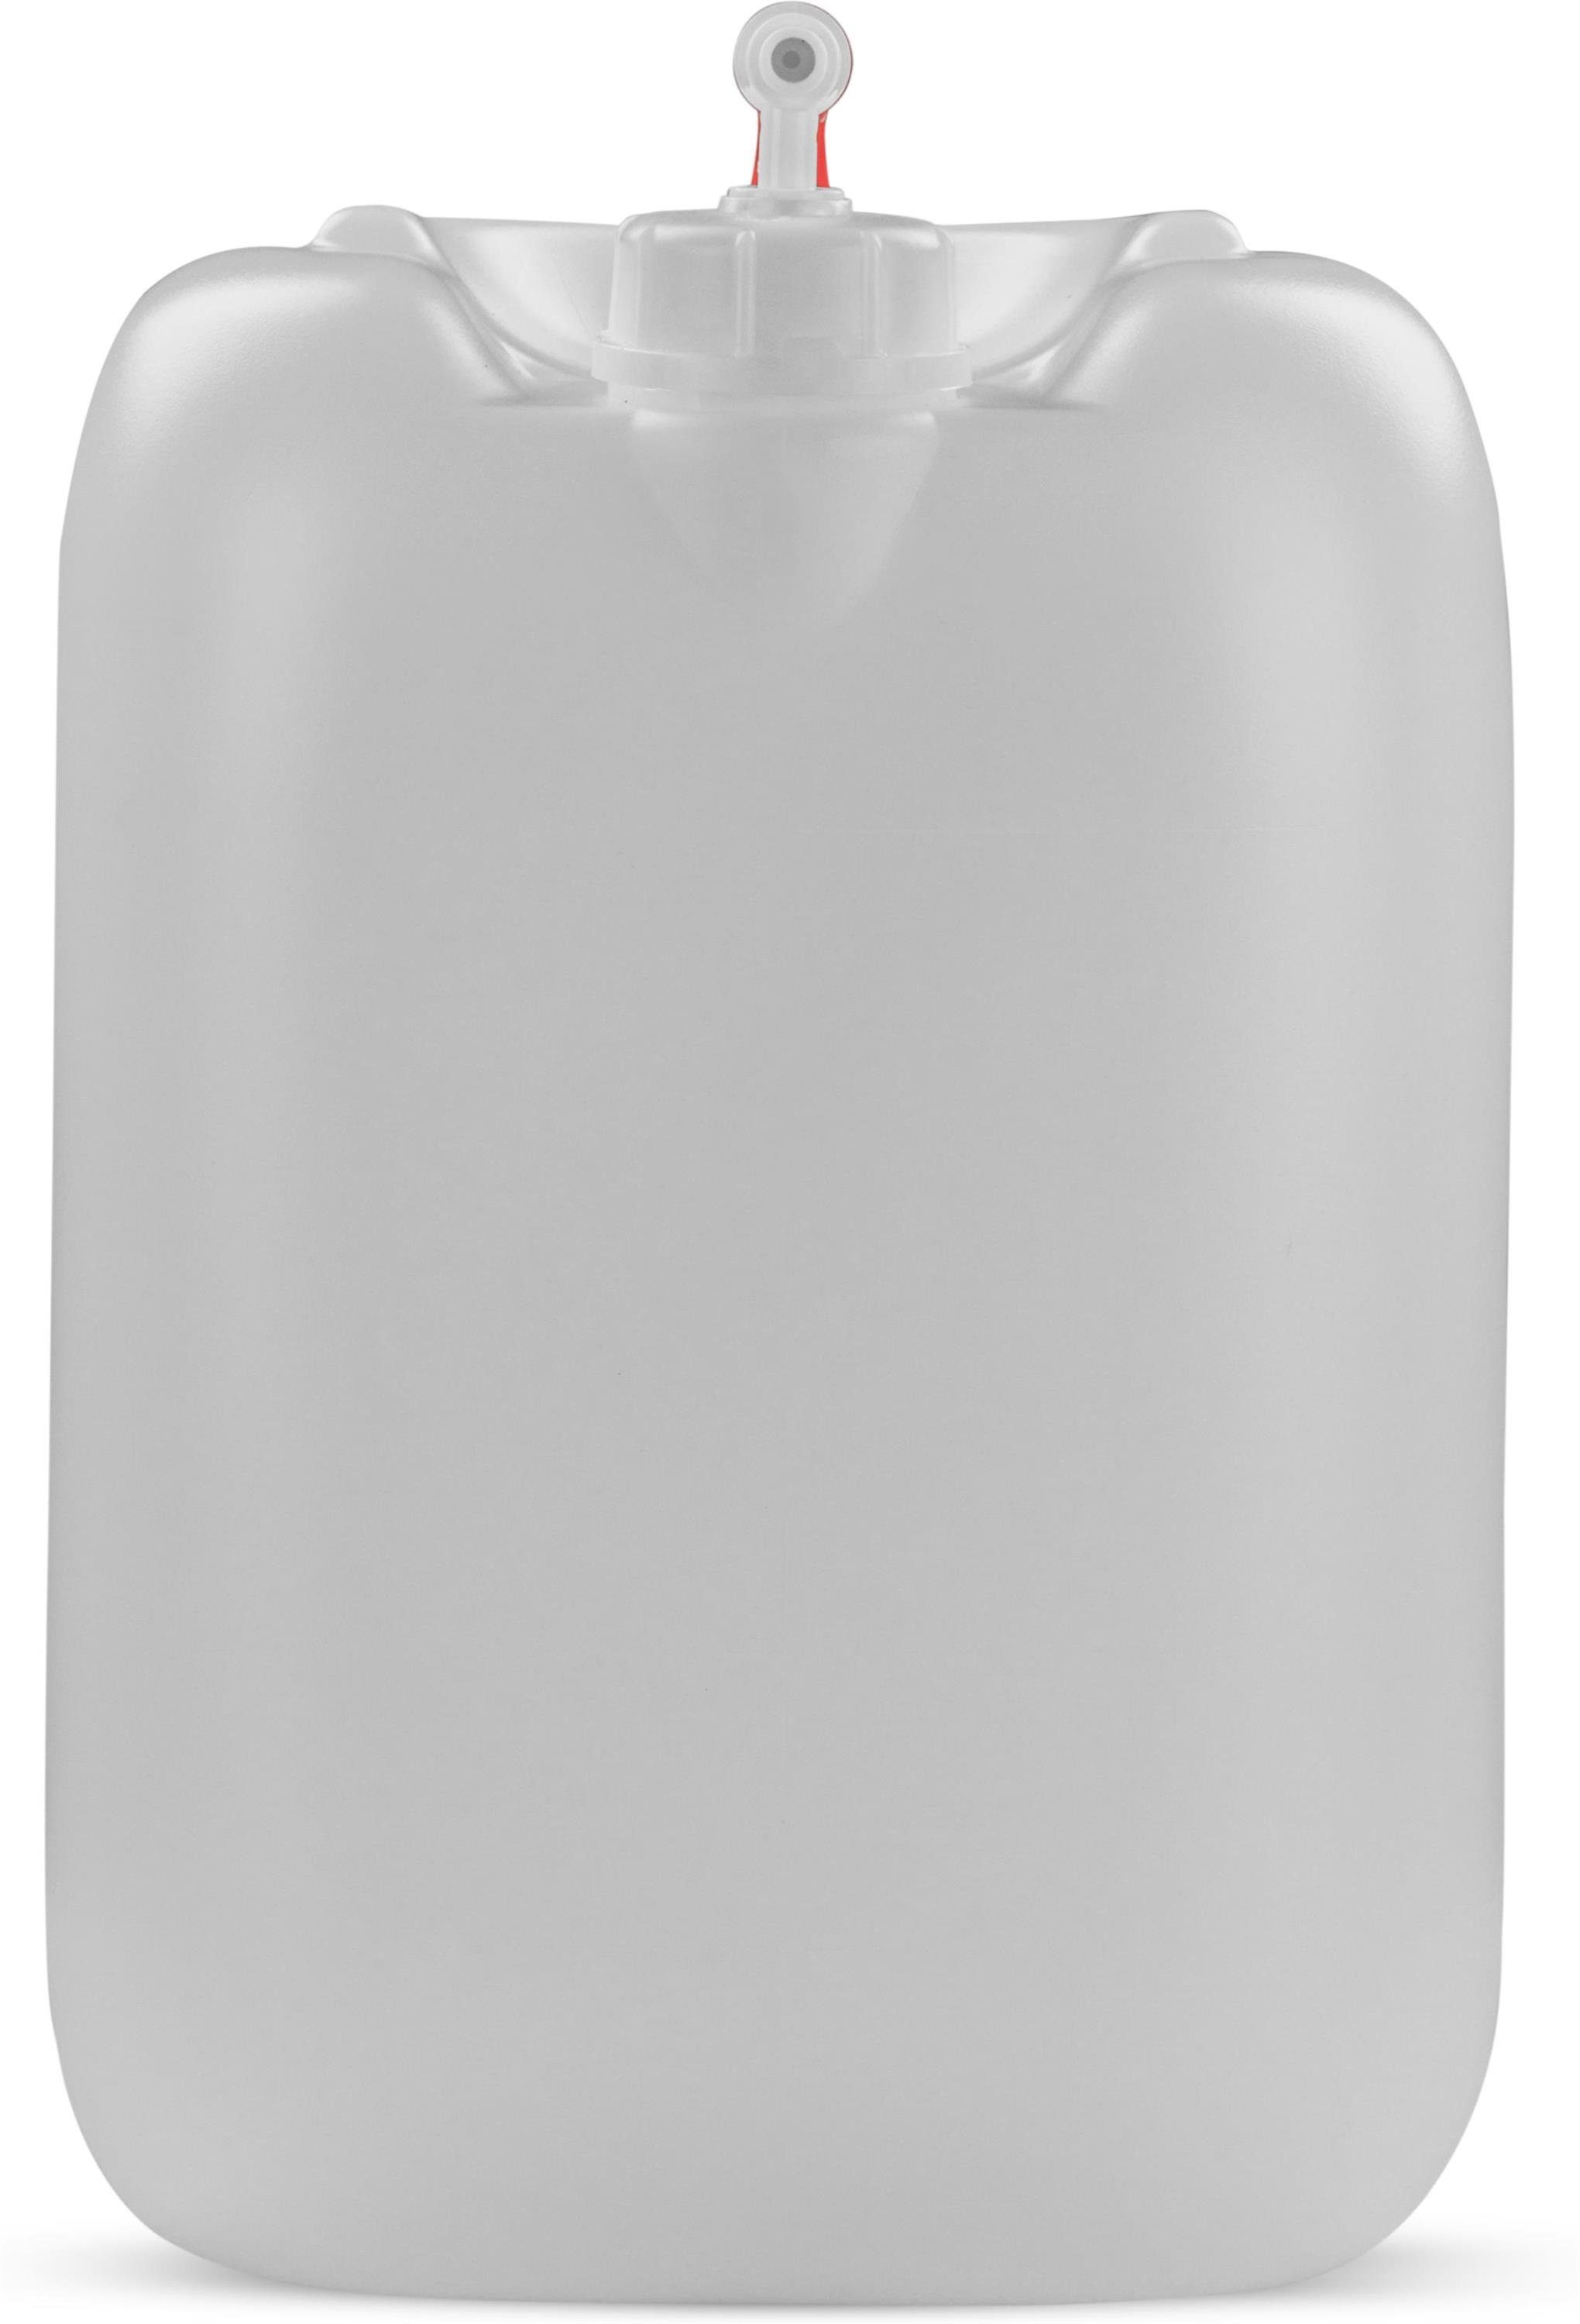 Kanister (1 mit Liter Wasserbehälter Trinkwasserkanister Lebensmittelecht Outdoorkanister normani Carry Hahn St), Wasserkanister Campingkanister 30